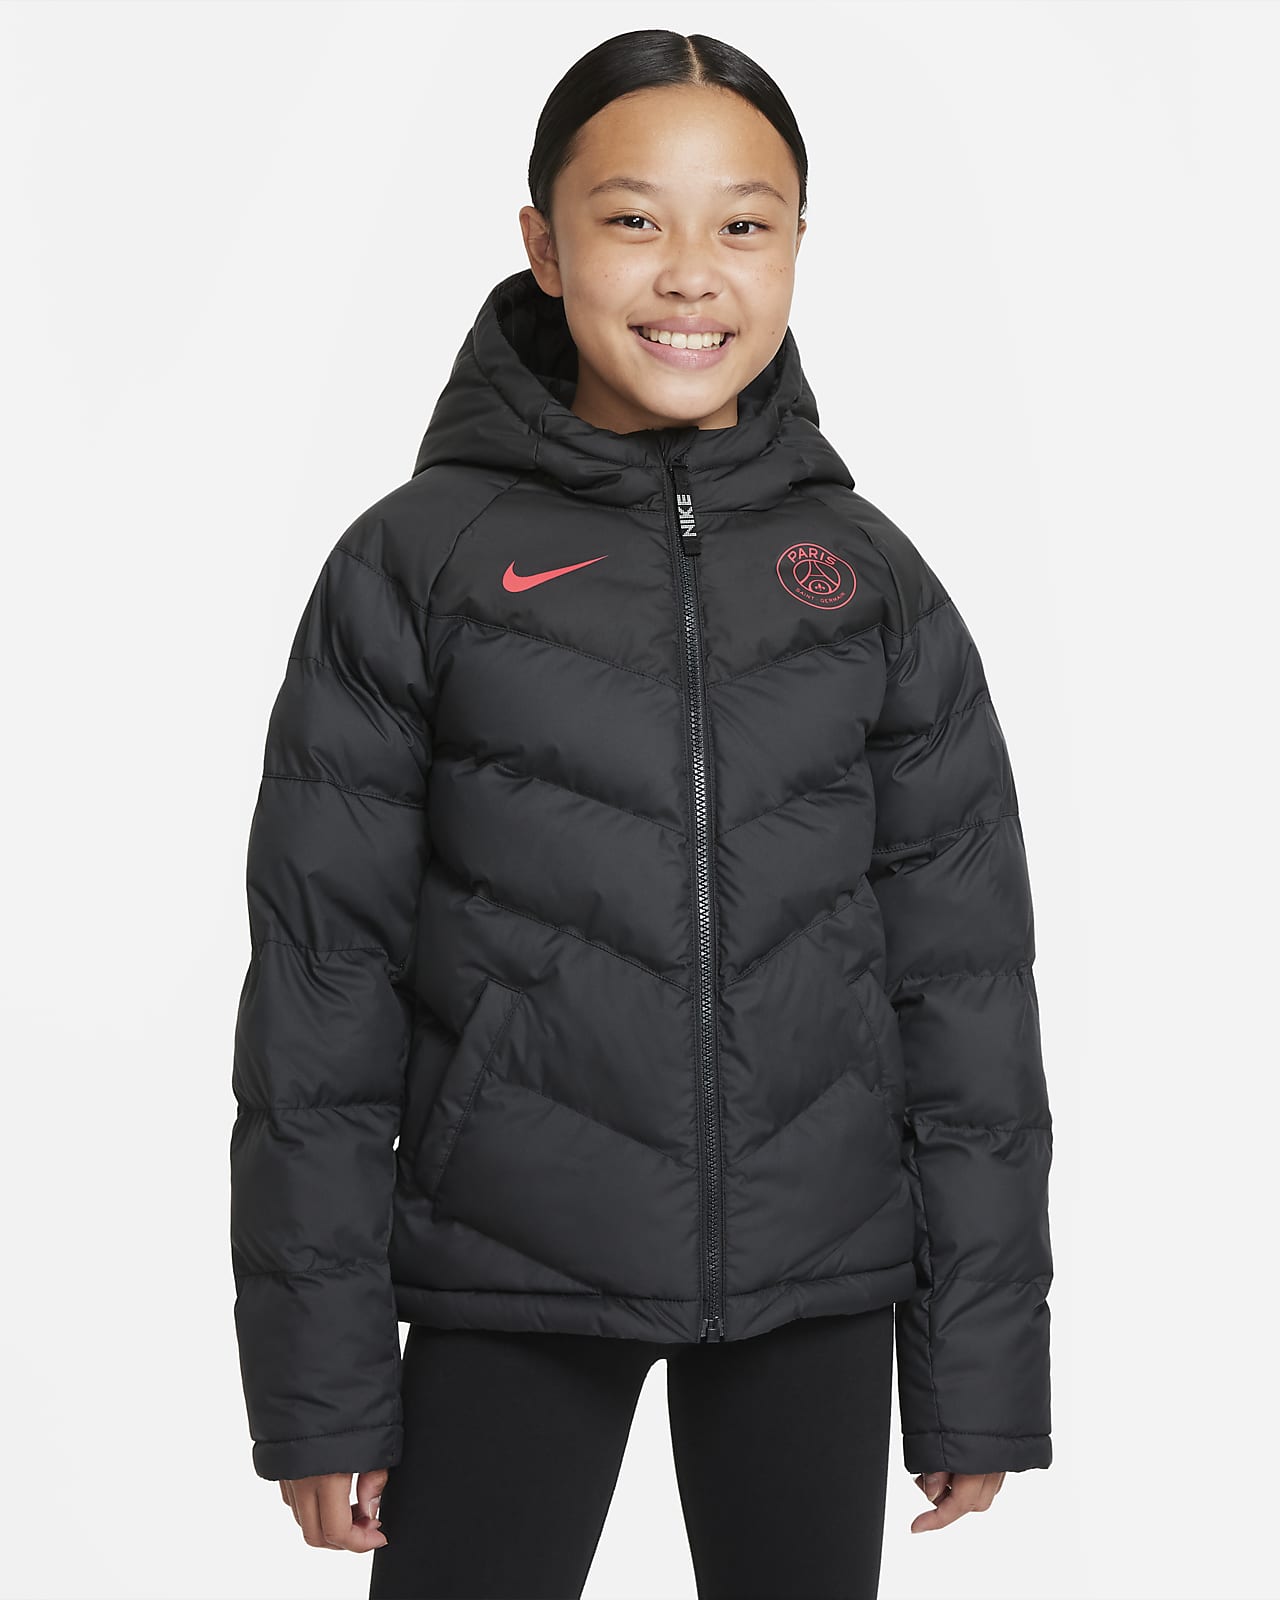 Τζάκετ Nike Sportswear Παρί Σεν Ζερμέν για μεγάλα παιδιά